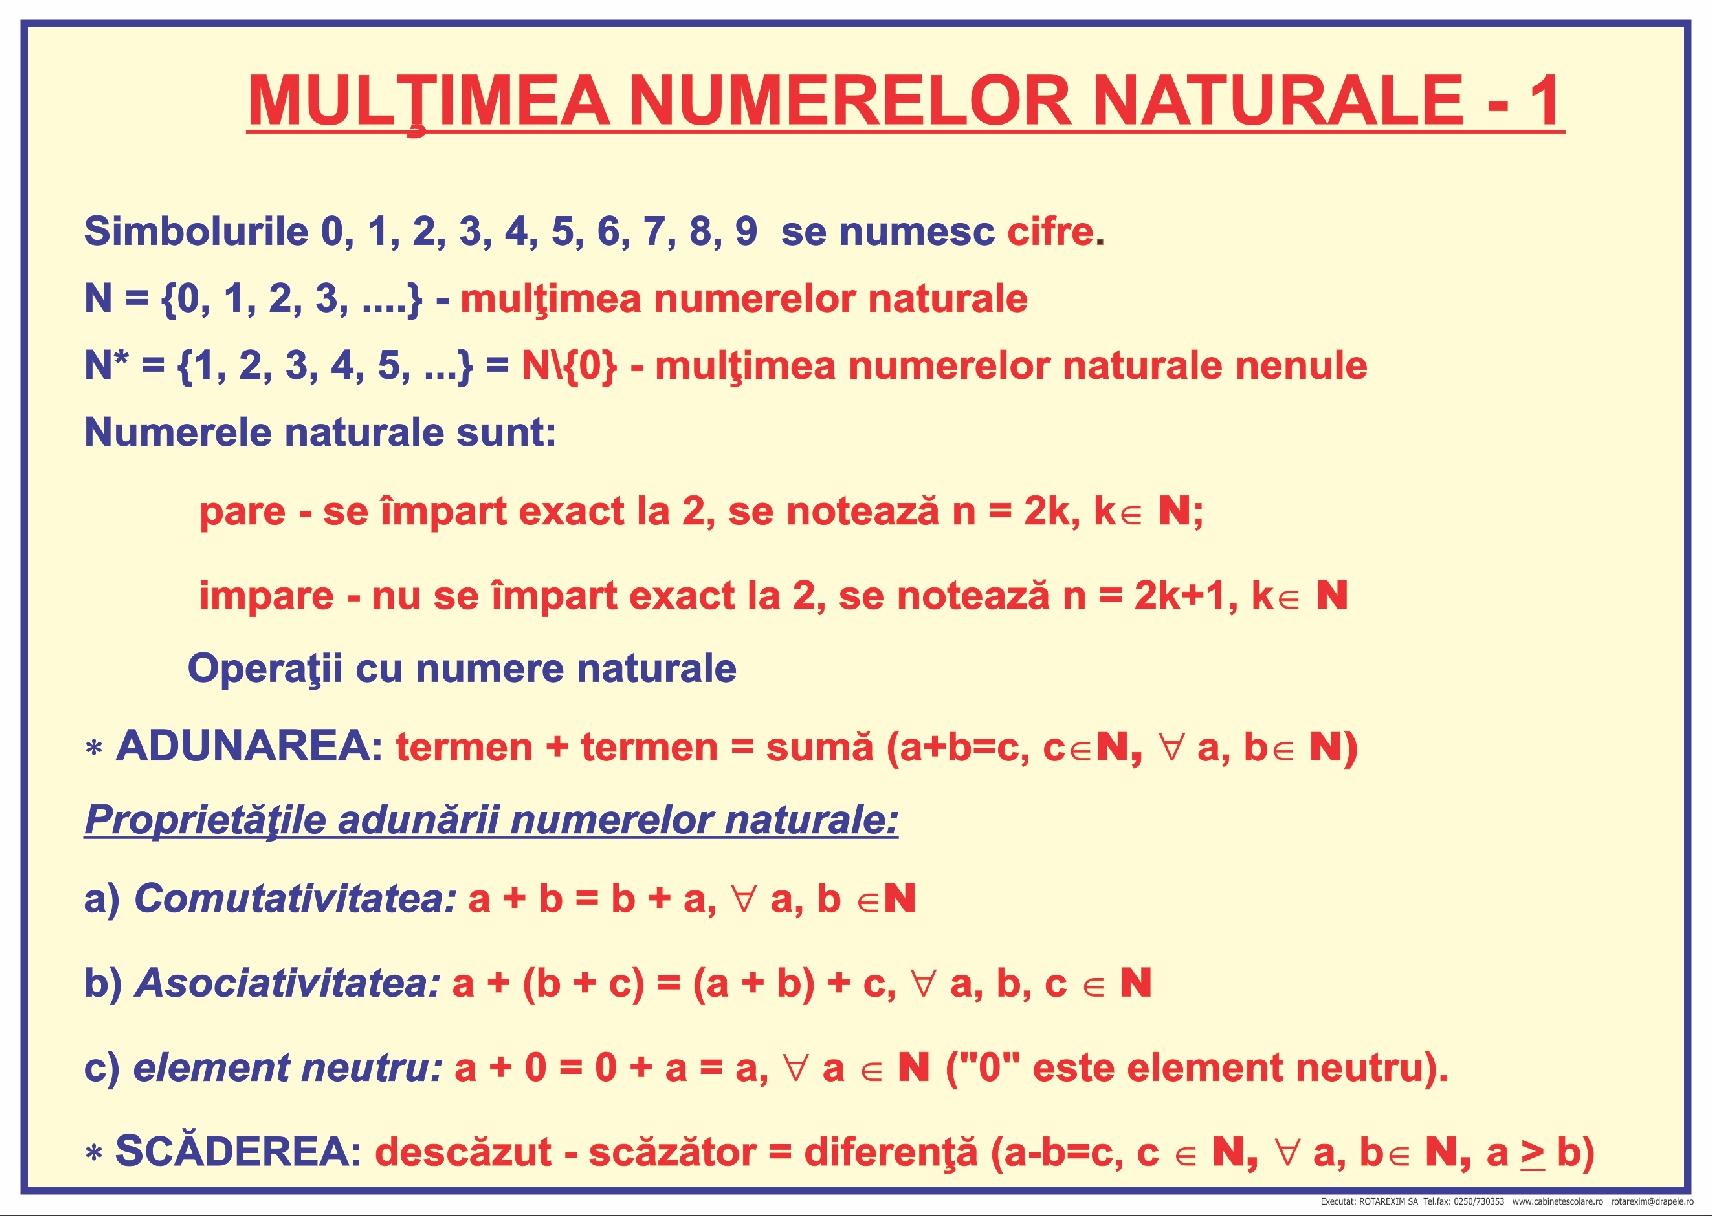 Mulțimea numerelor naturale - 1